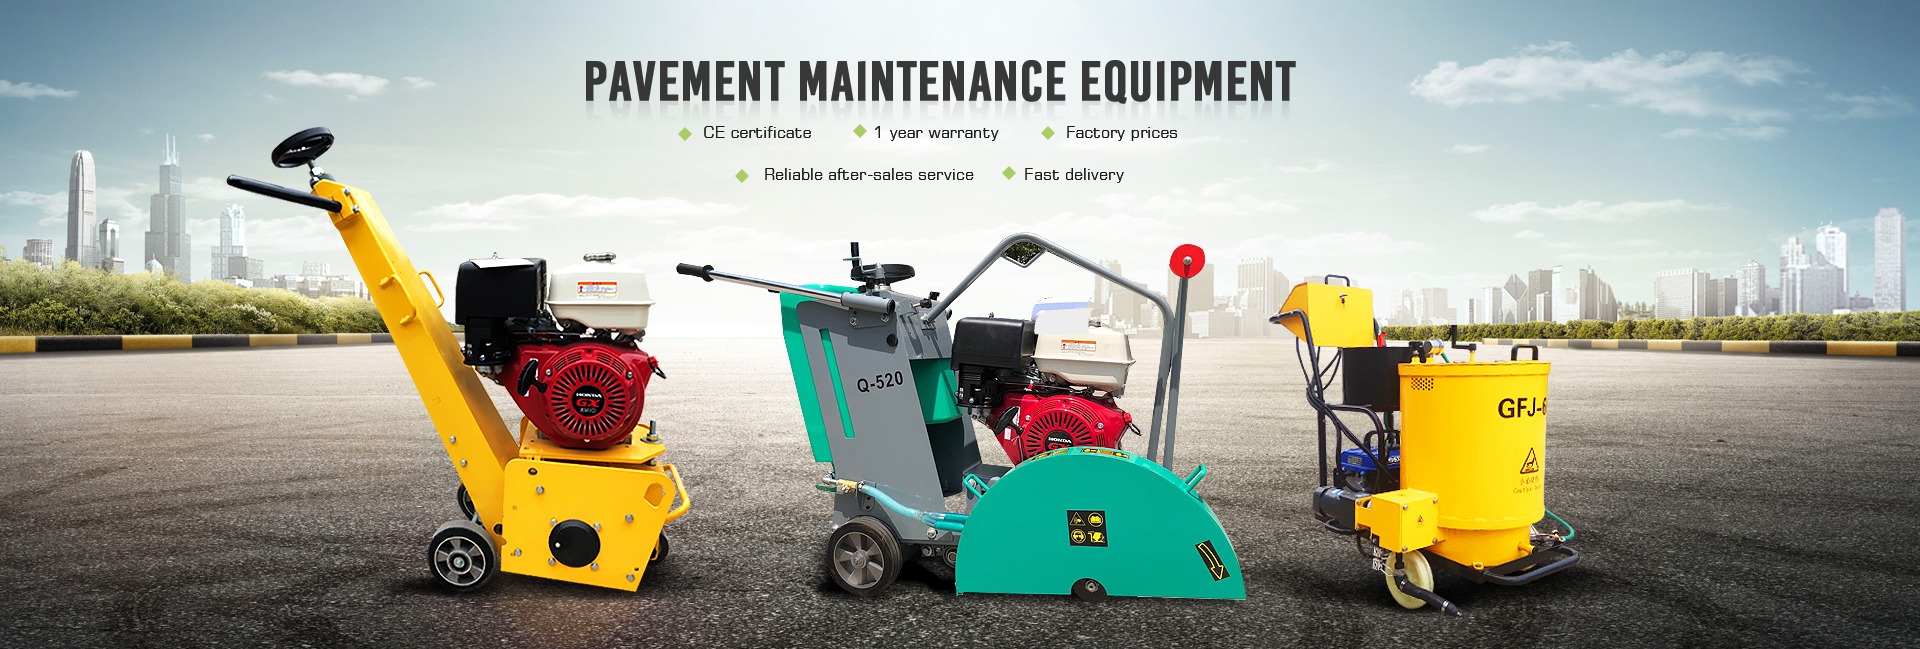 Pavement Maintenance Equipment